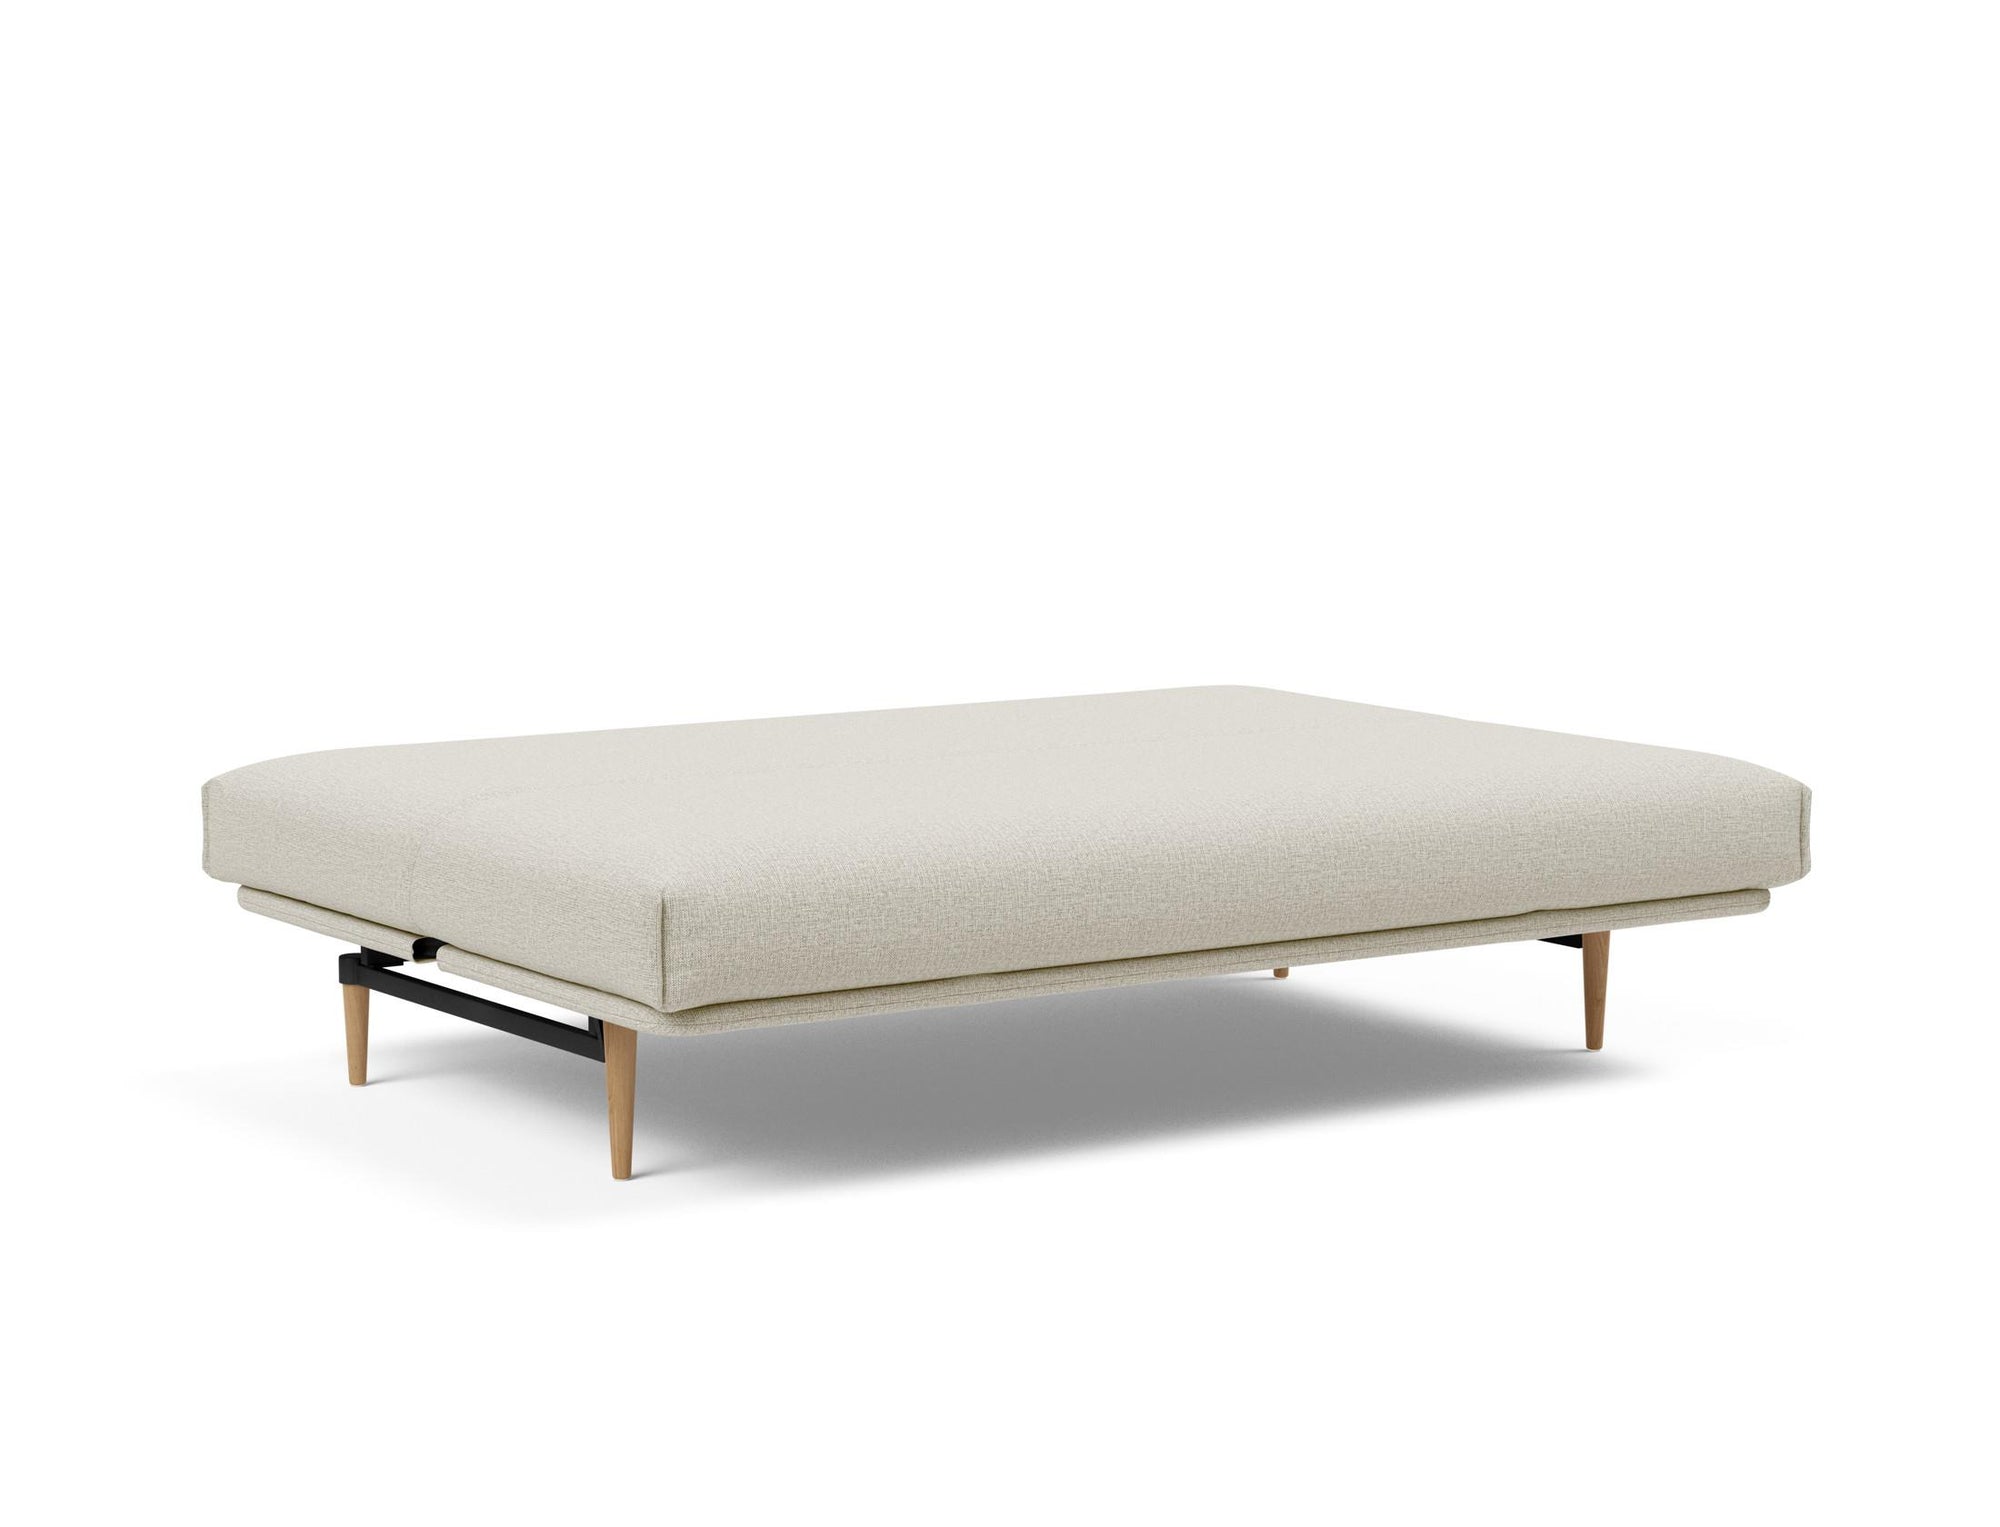 COLPUS Super Soft Sofa Bed